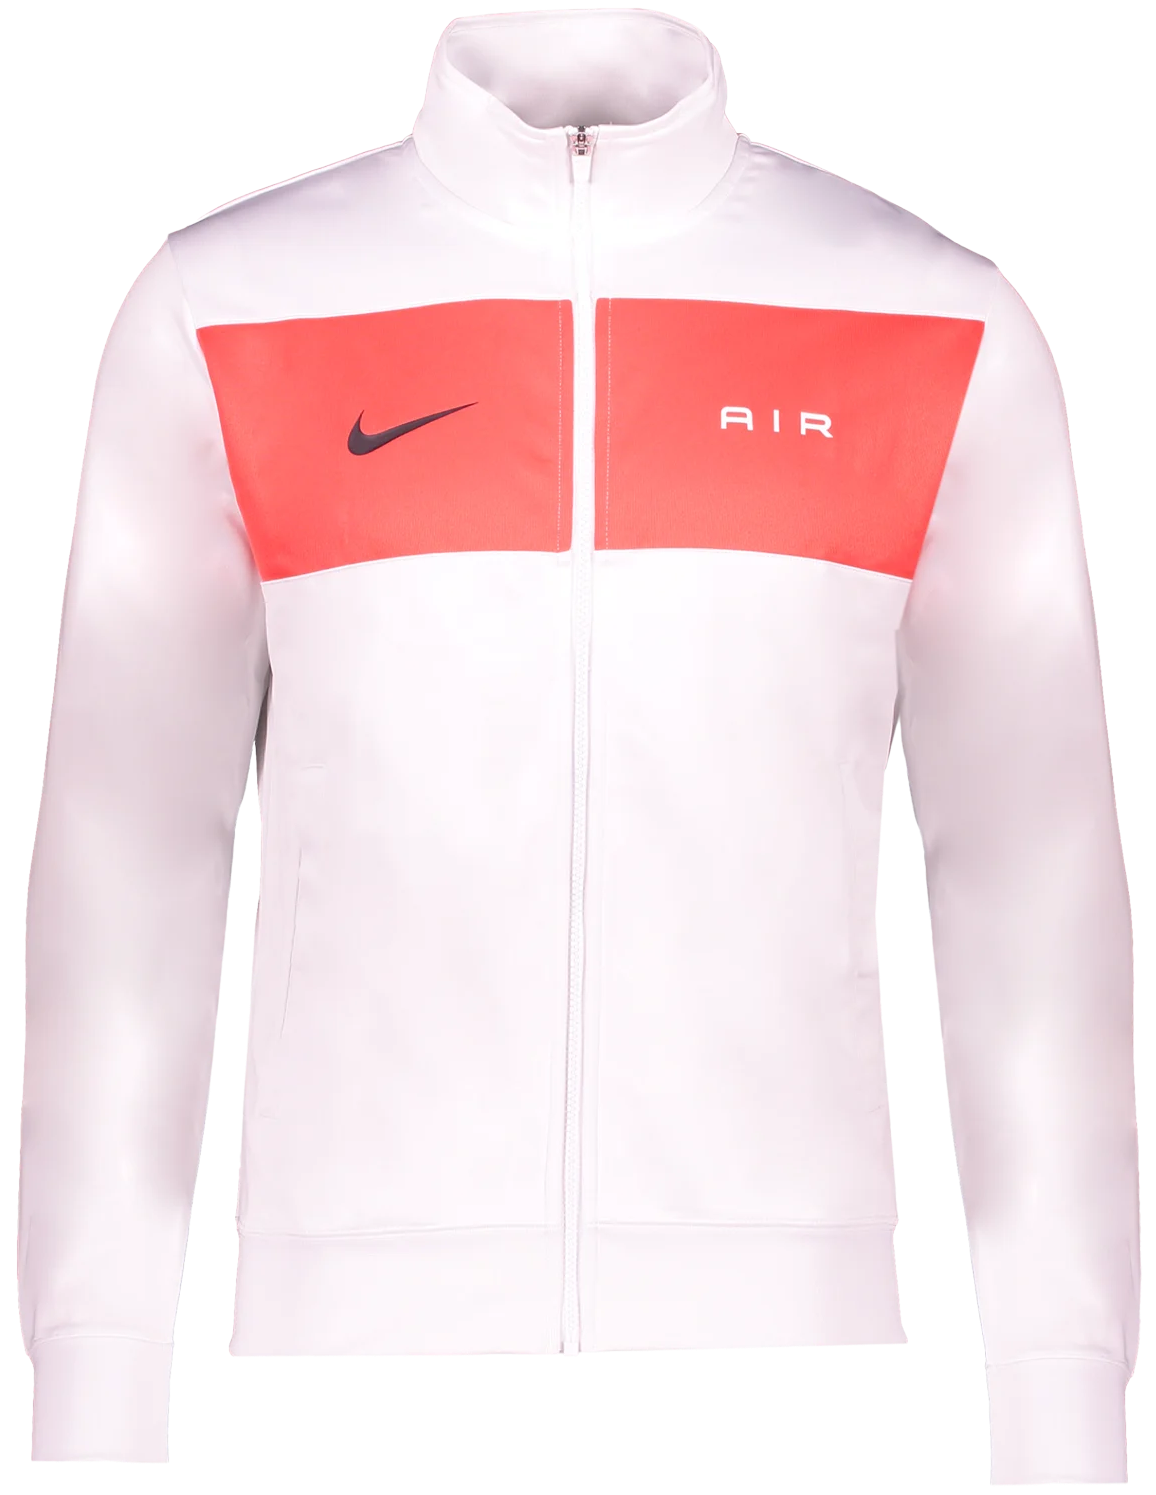 Pánská atletická bunda Nike Air SC Freiburg